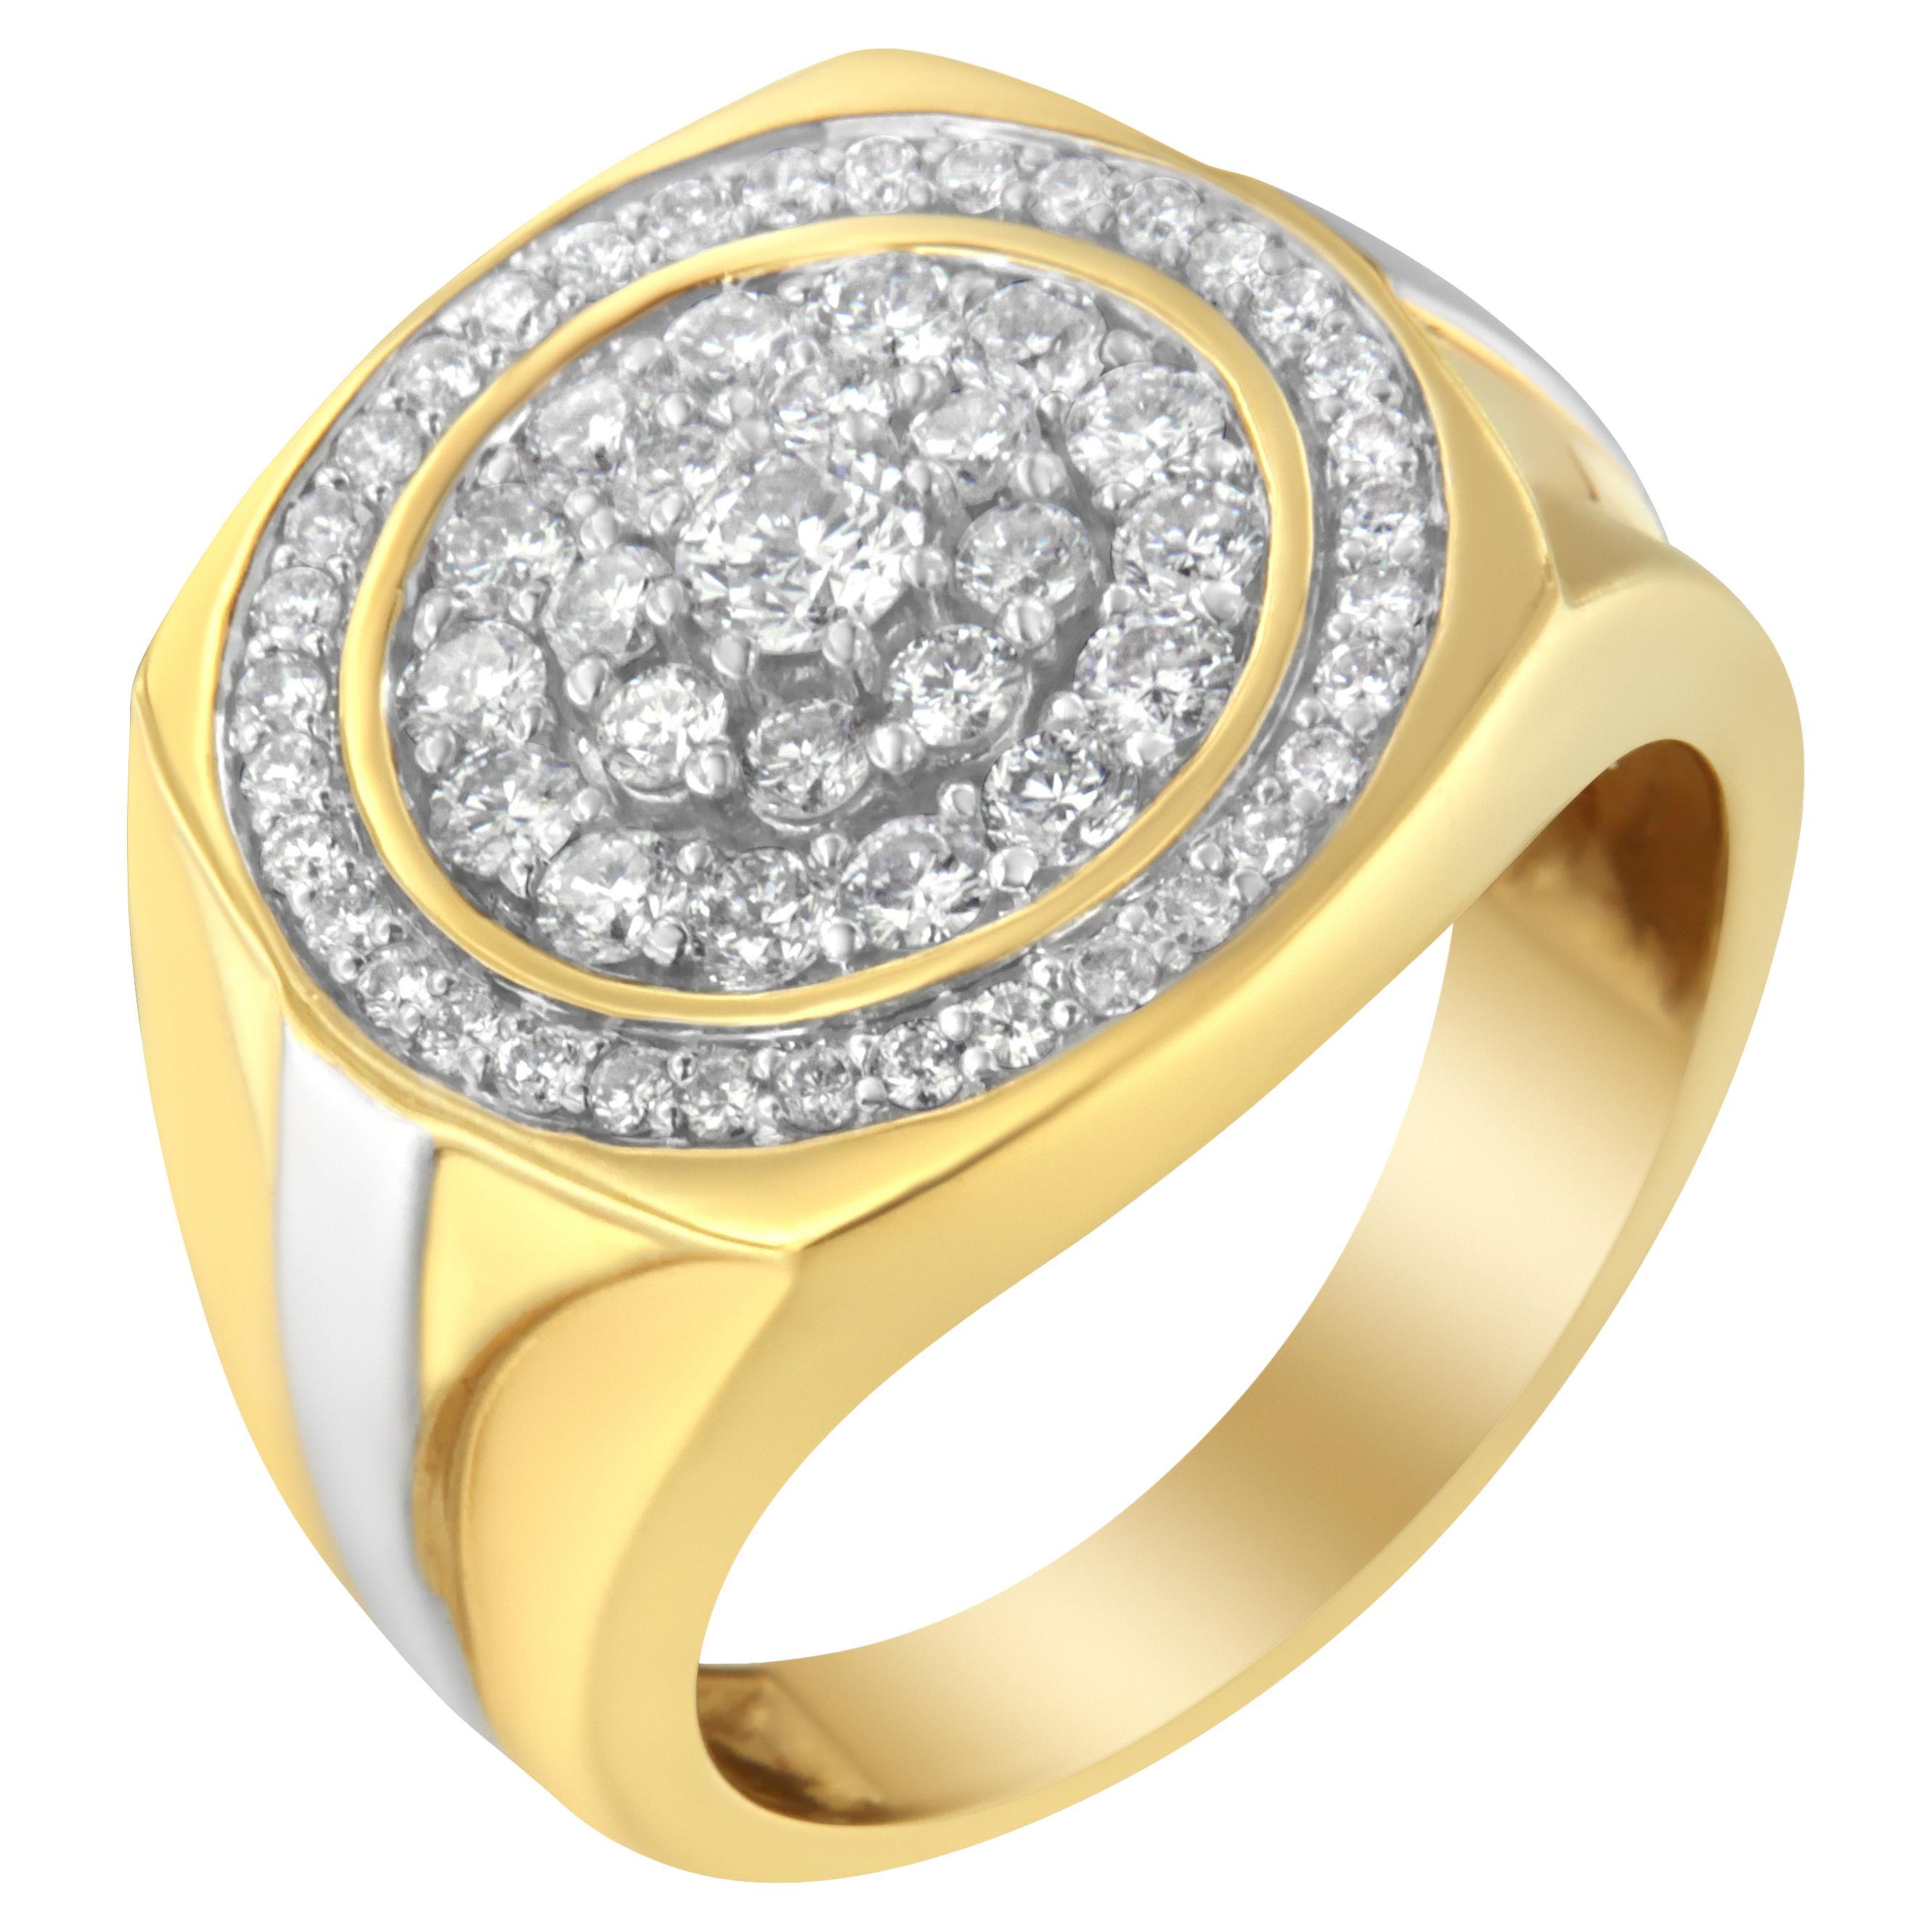 Men's 14K Yellow Gold 1 1/2 Carat Diamond Signet Ring Band